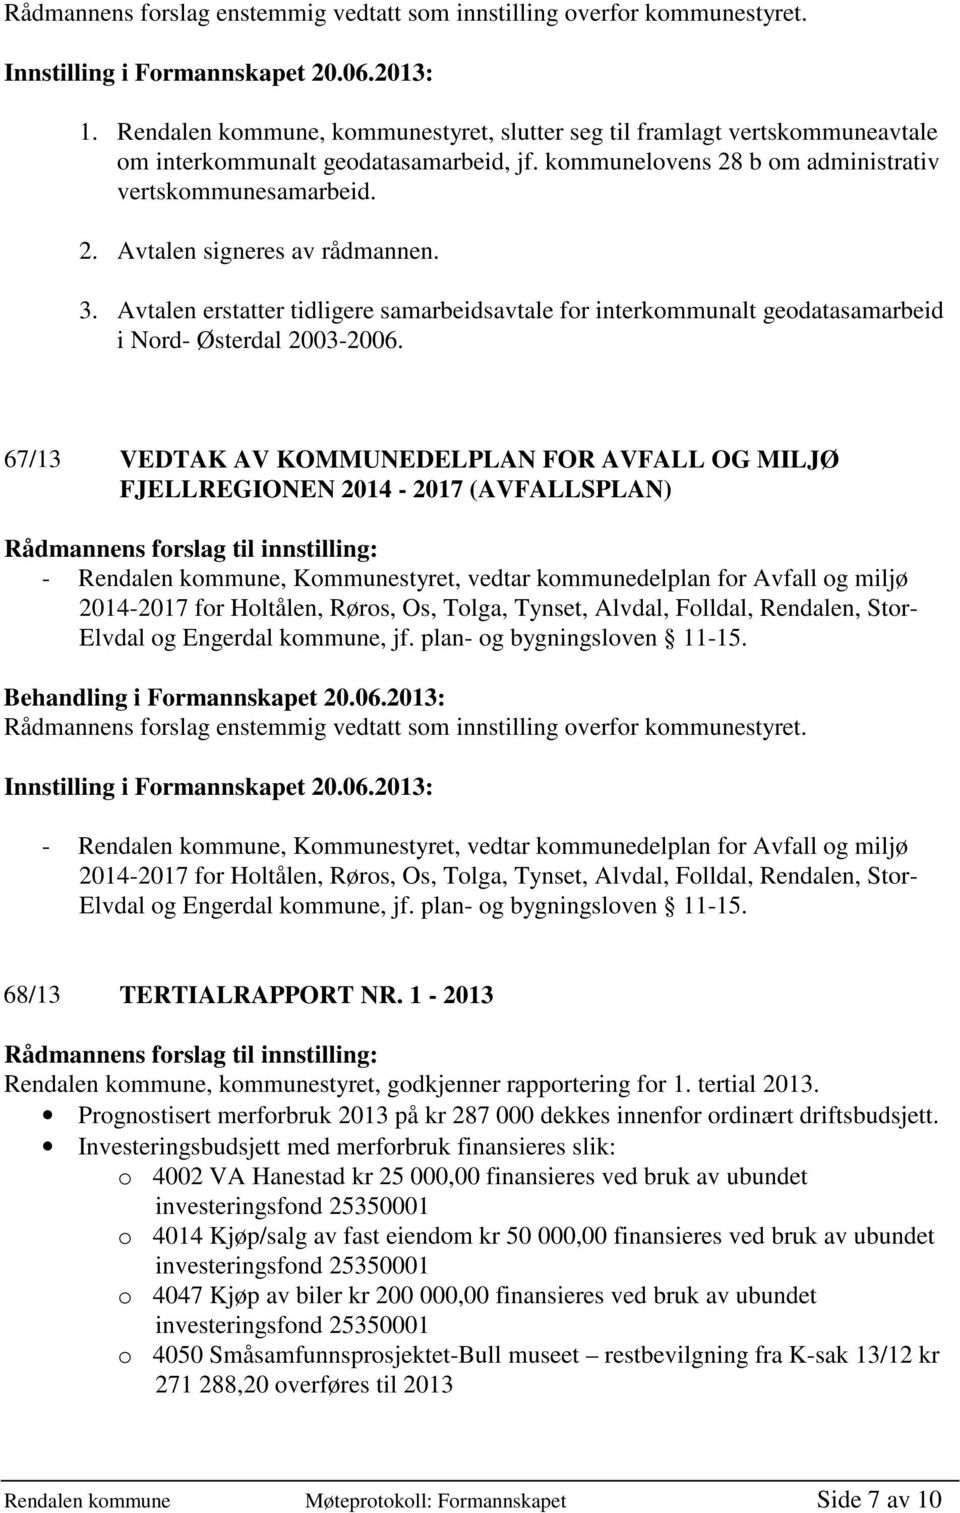 3. Avtalen erstatter tidligere samarbeidsavtale for interkommunalt geodatasamarbeid i Nord- Østerdal 2003-2006.